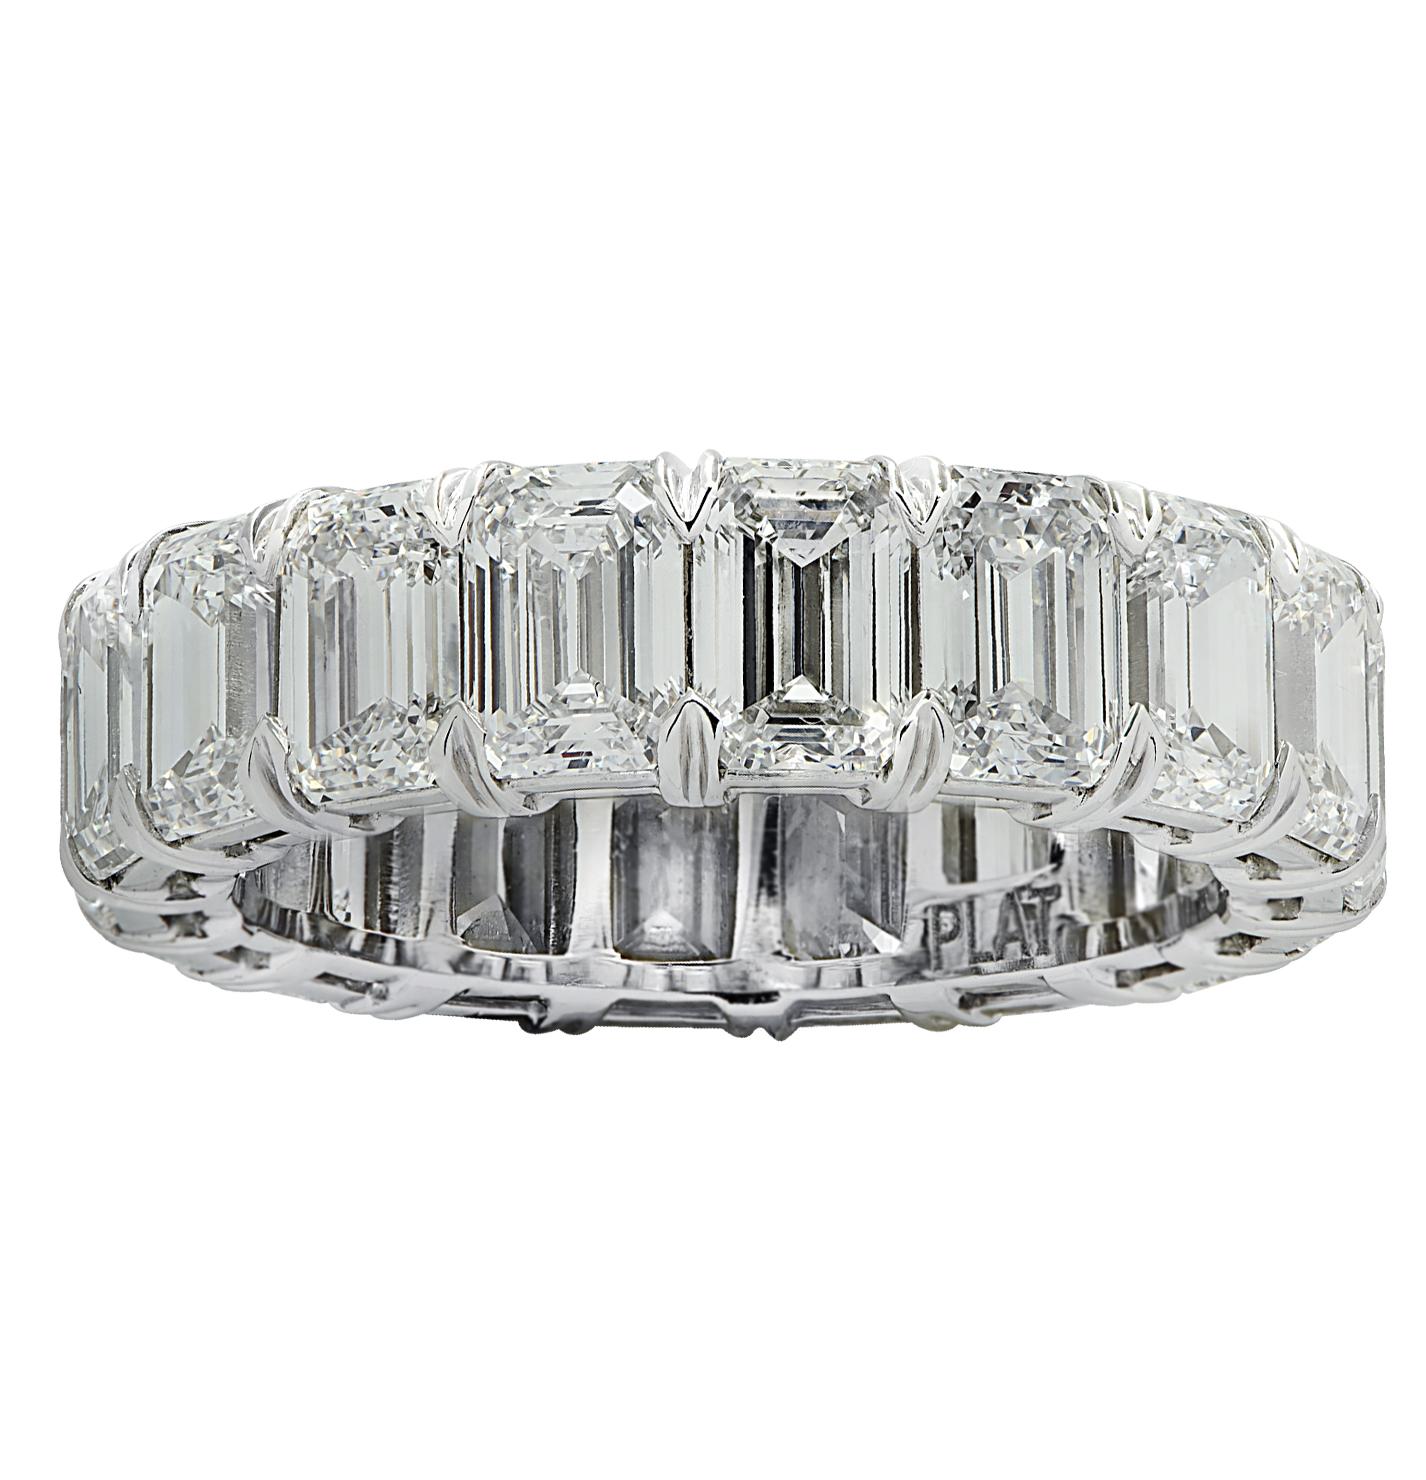 Vivid Diamonds Ewigkeitsring aus Platin mit 18 Diamanten  spektakuläre GIA-zertifizierte Diamanten im Smaragdschliff, mit einem Gesamtgewicht von 6,48 Karat, Farbe D-F, Reinheit VVS2-VS2. Jeder Diamant wurde sorgfältig ausgewählt, perfekt